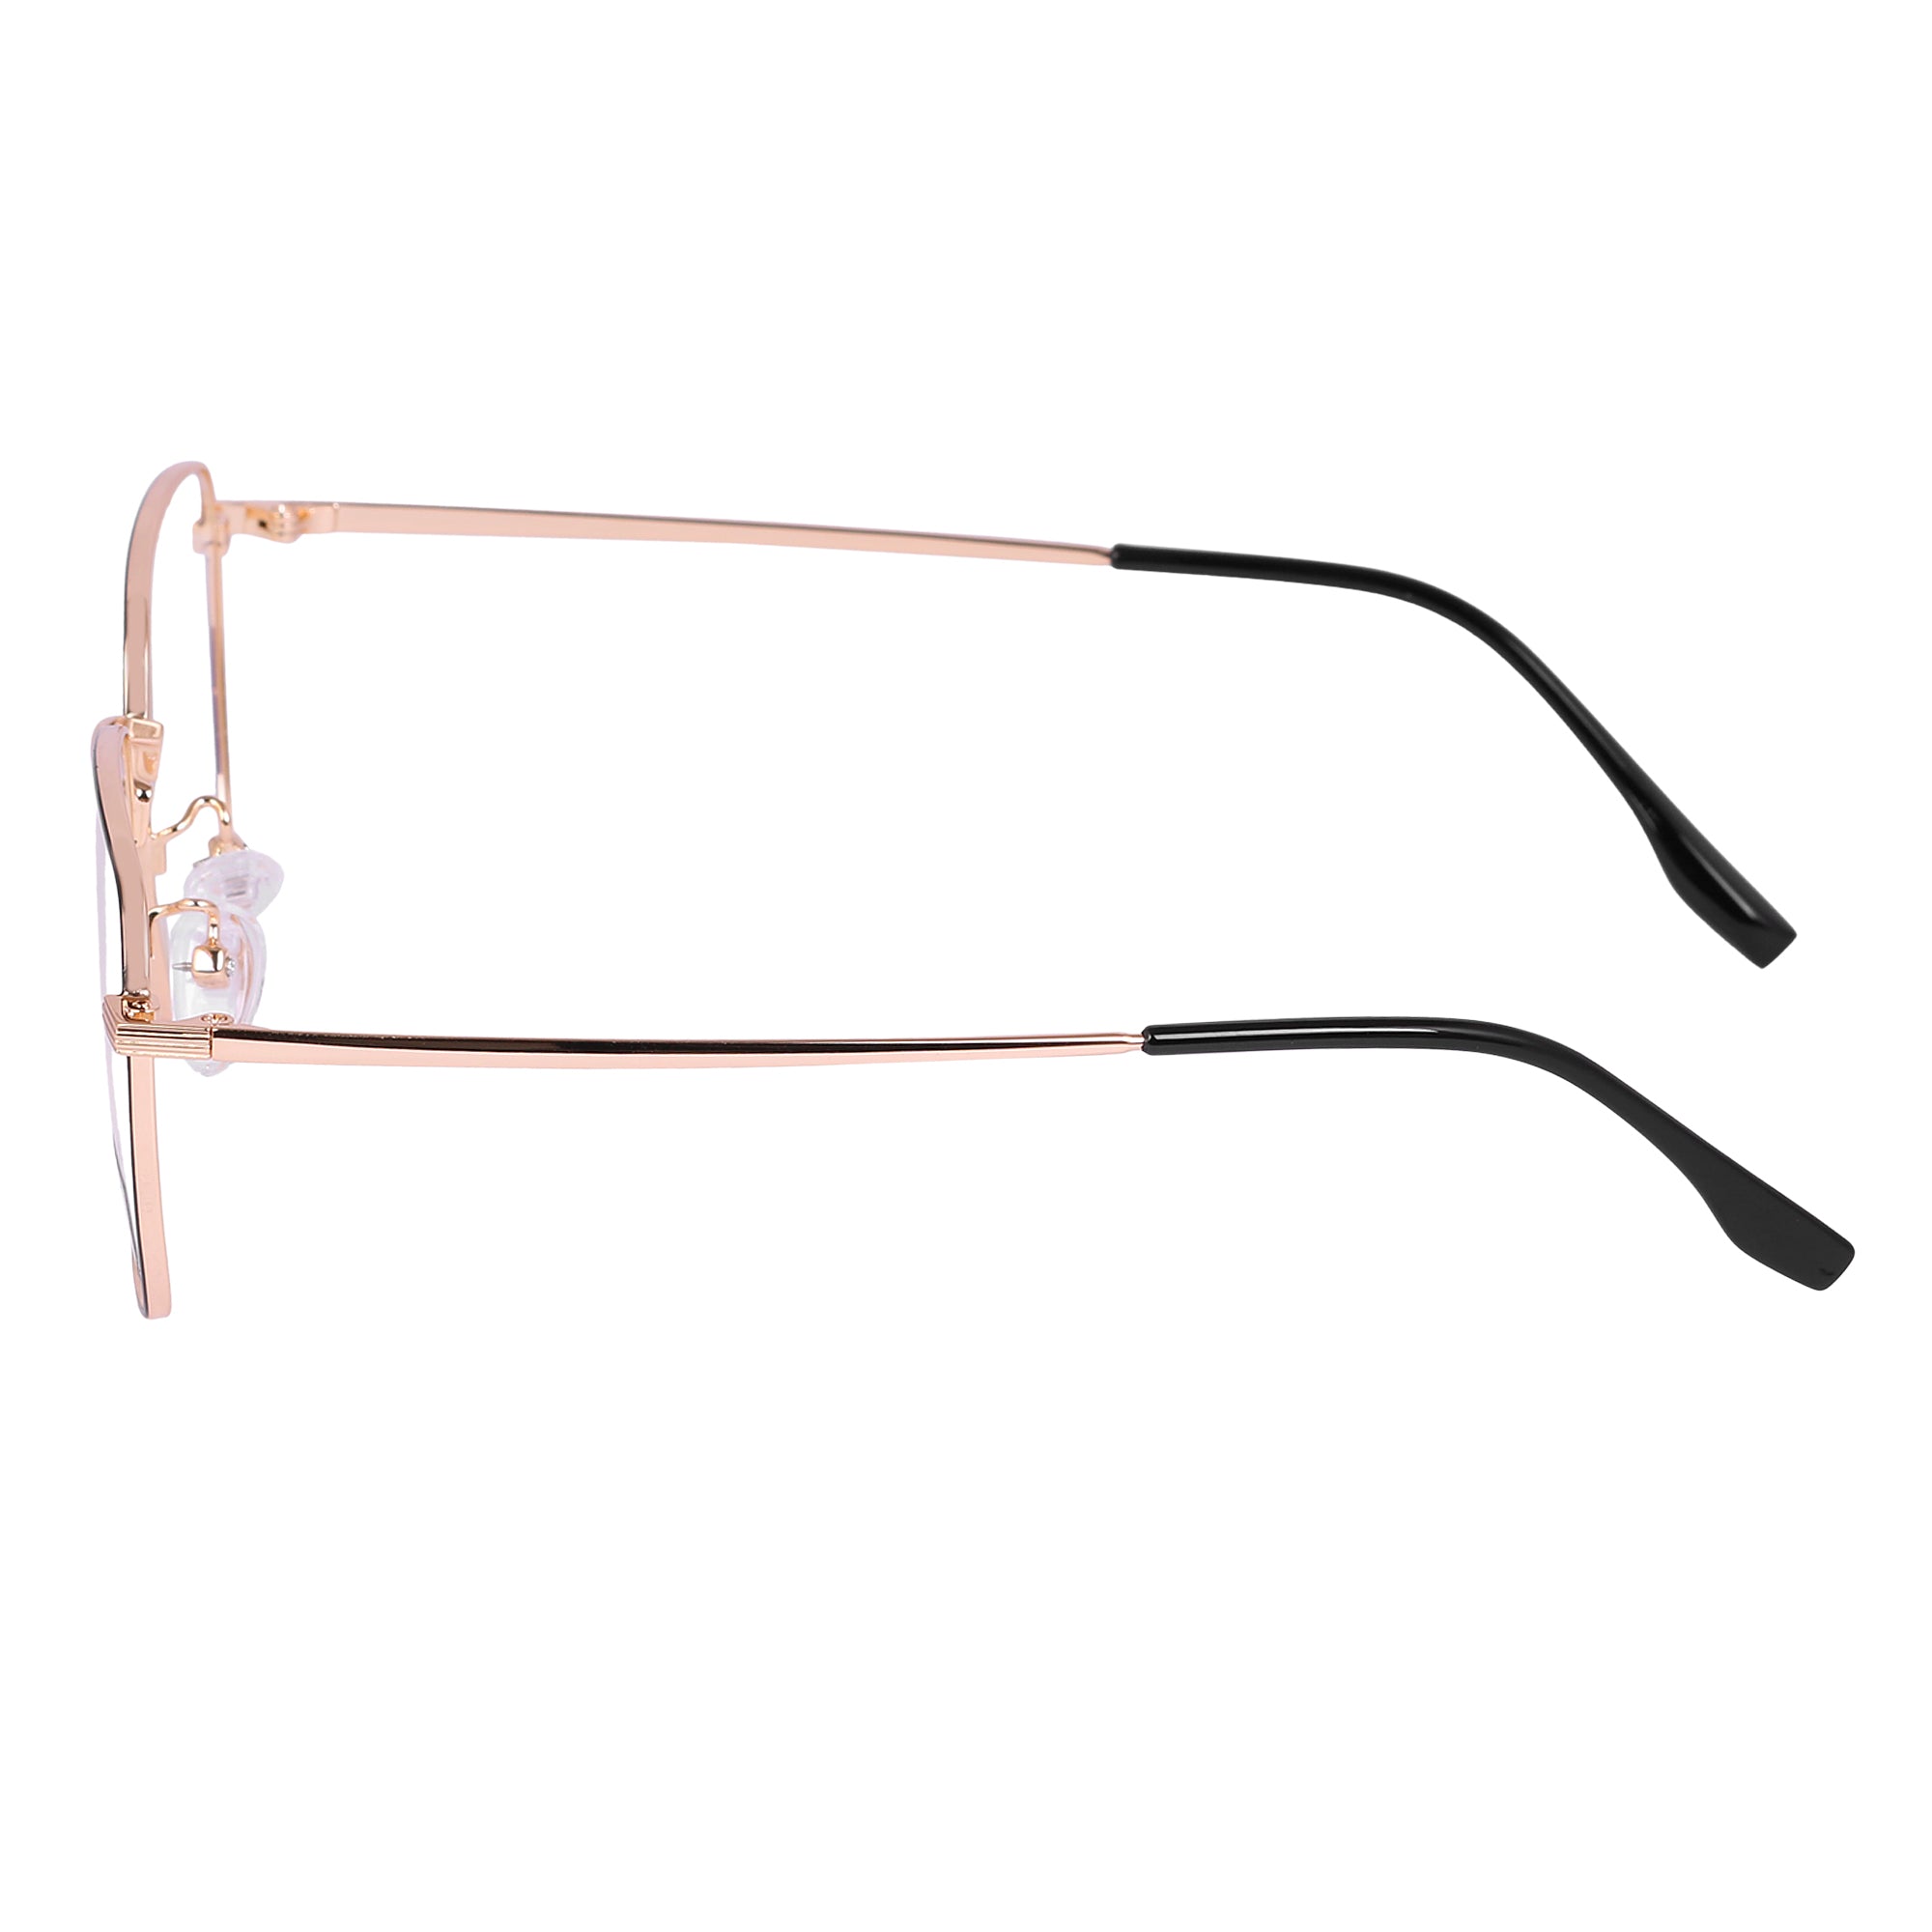 Black & Gold Rimmed Square Metal Eyeglasses - L35006